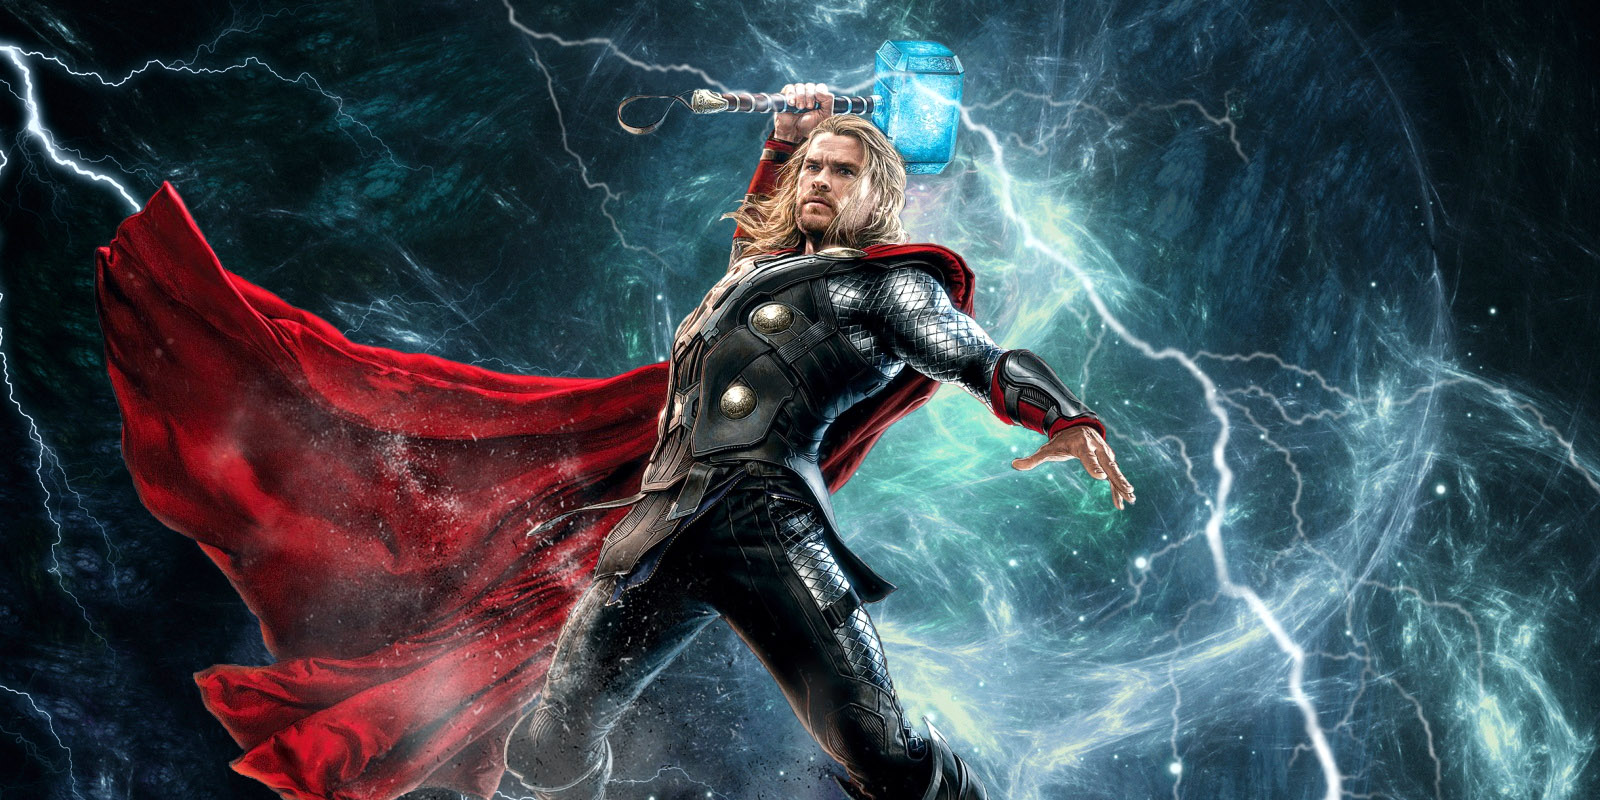 Come funziona il martello di Thor? Spoiler: come кешбэк